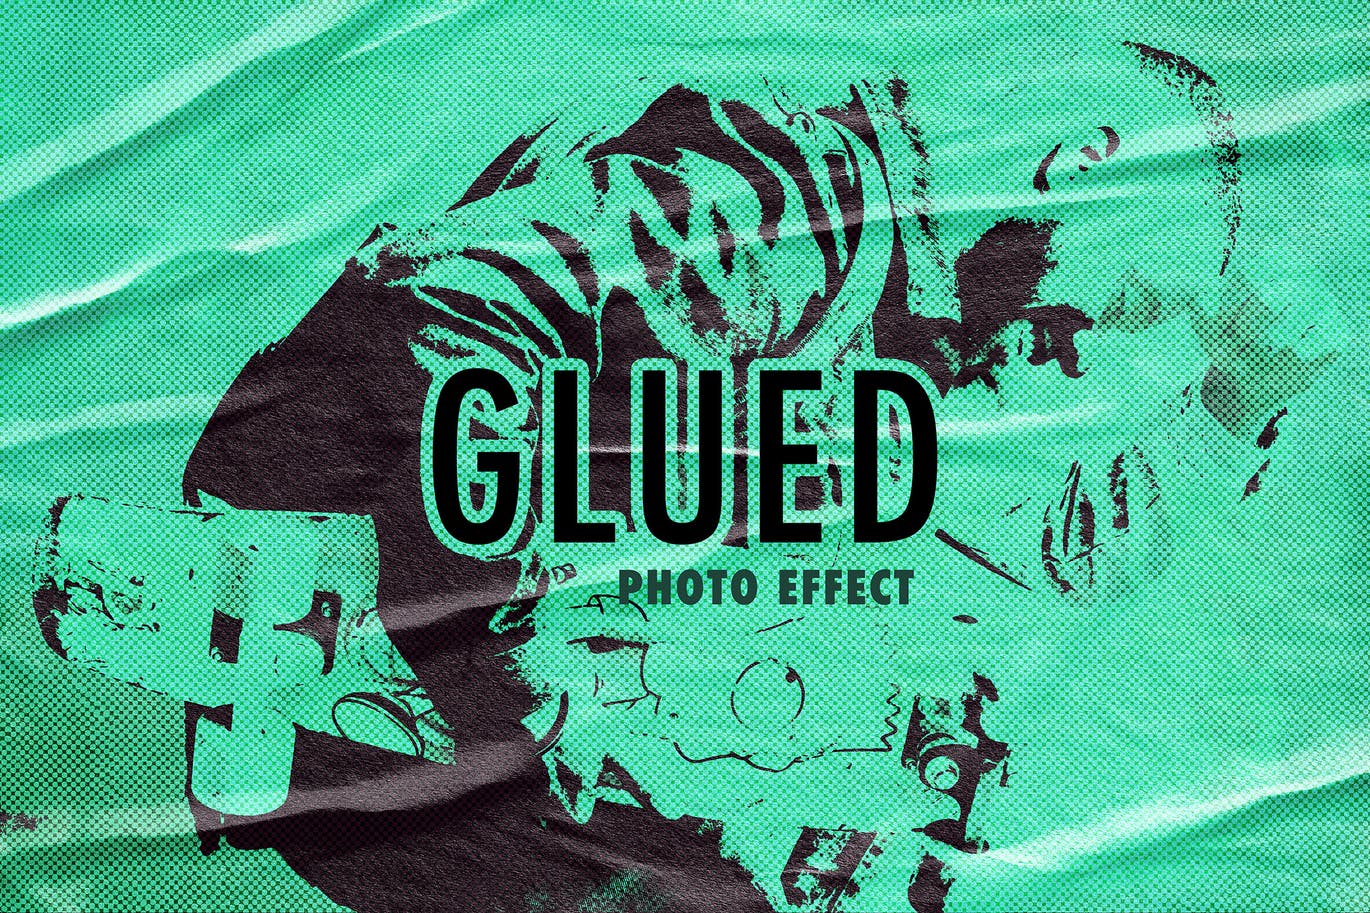 胶粘折痕海报照片效果模板 Glued Poster Photo Effect 插件预设 第1张